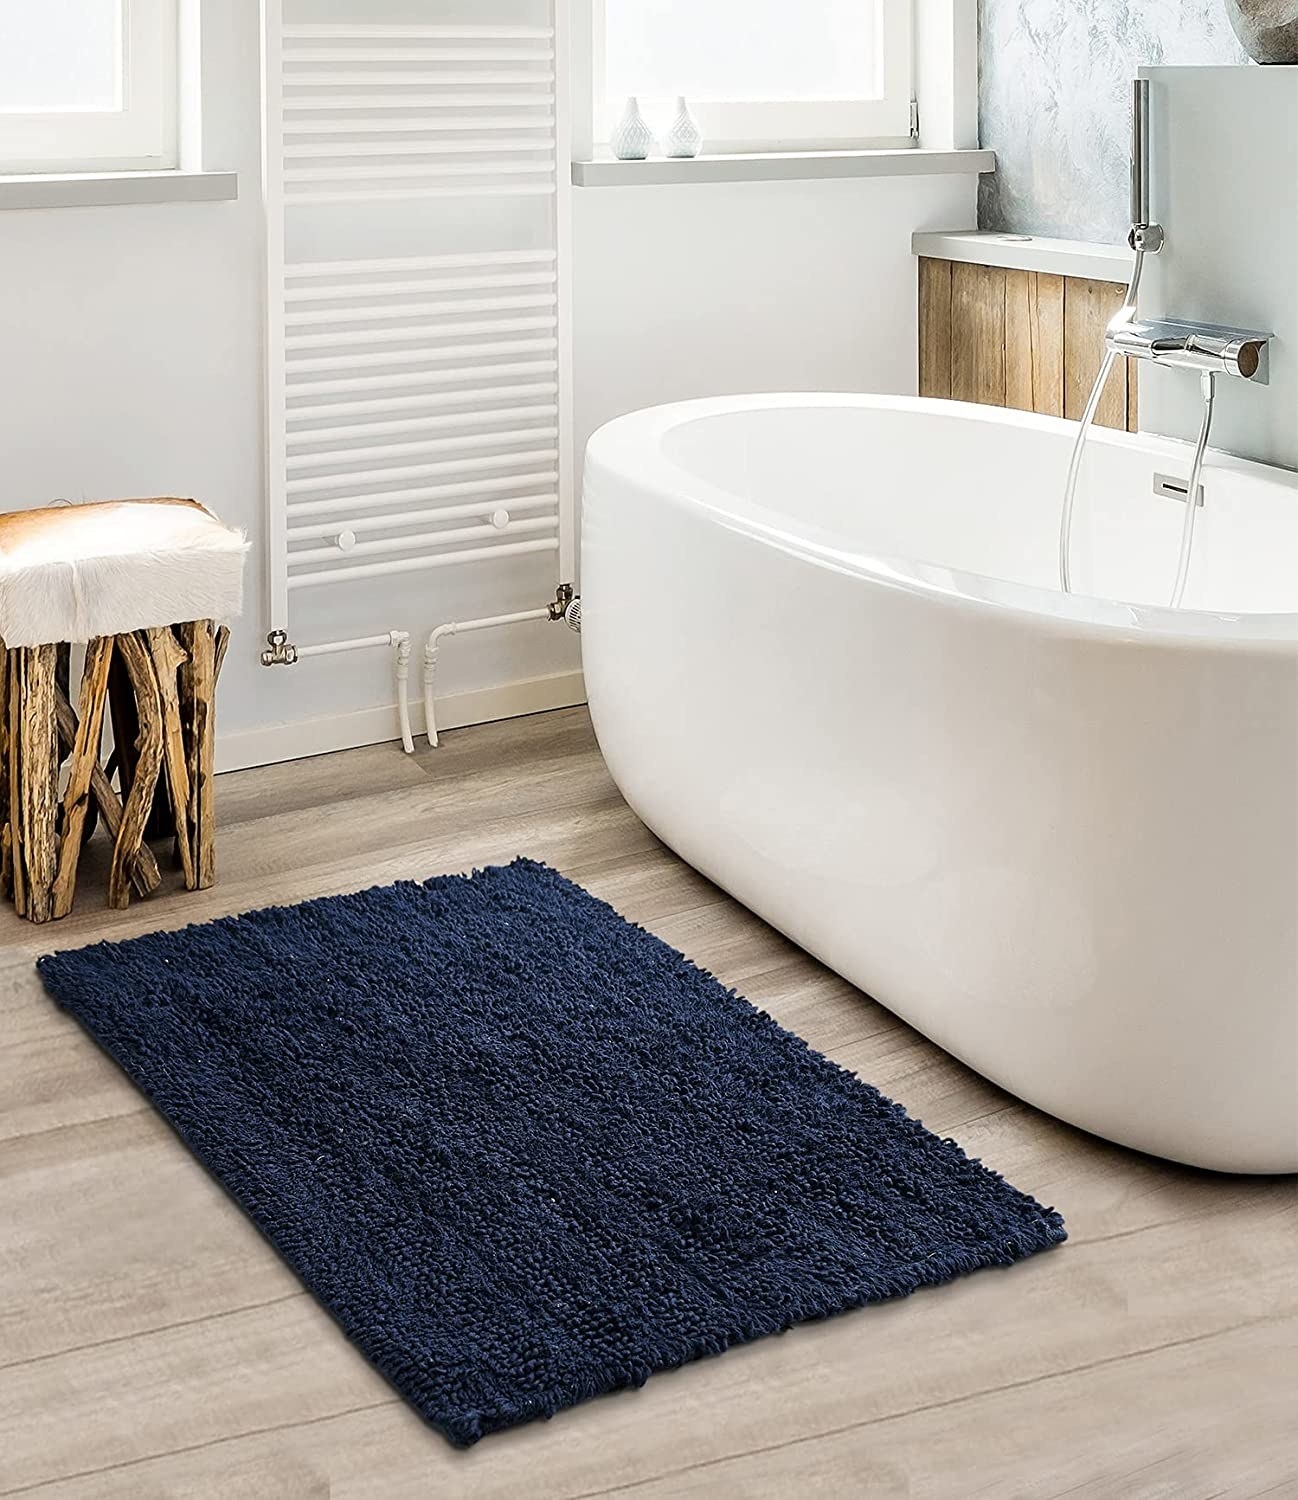 A blue bath mat near a tub